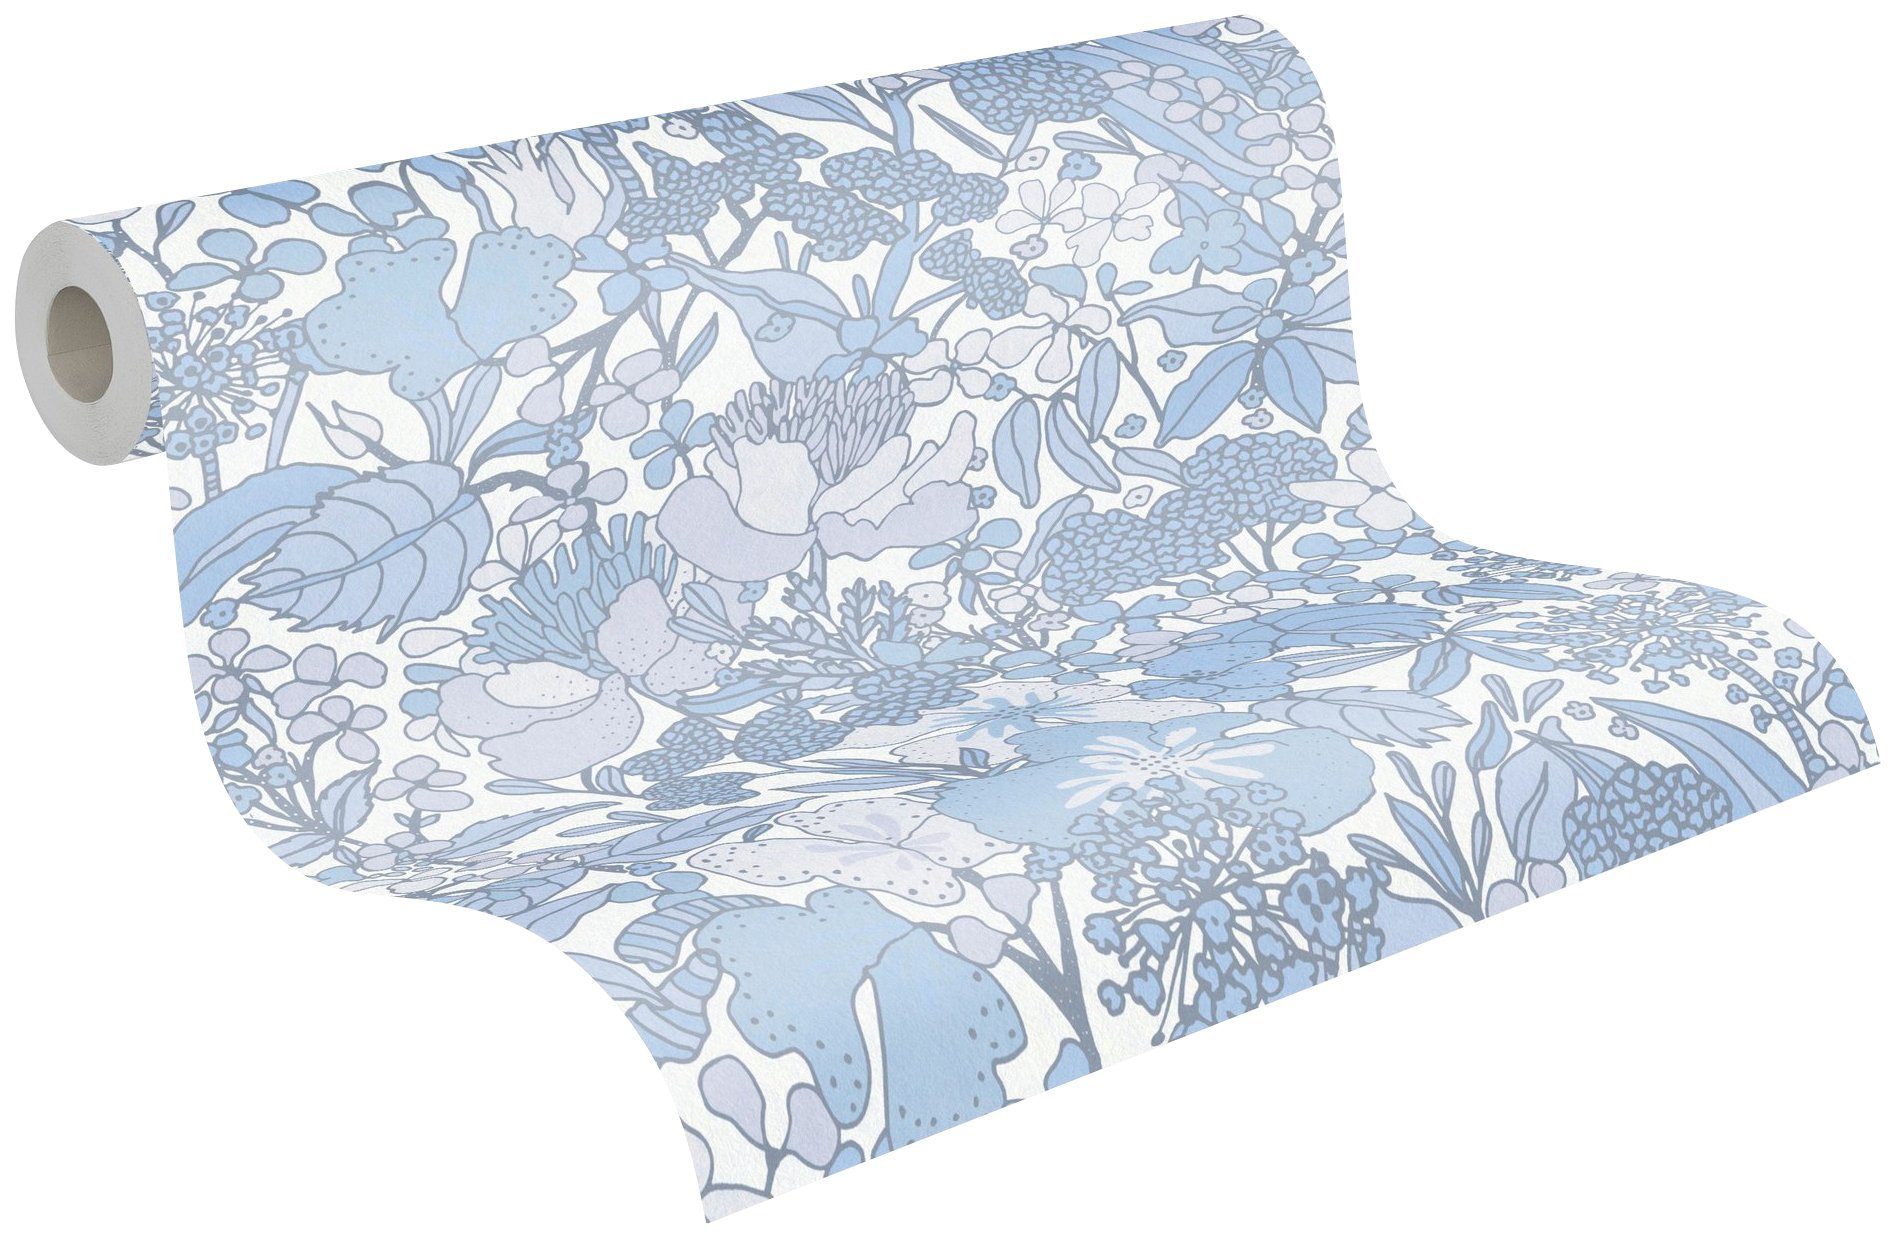 Vliestapete Tapete botanisch, Architects Impression, floral, Dschungel grau/blau/weiß Blumentapete Paper Floral glatt,